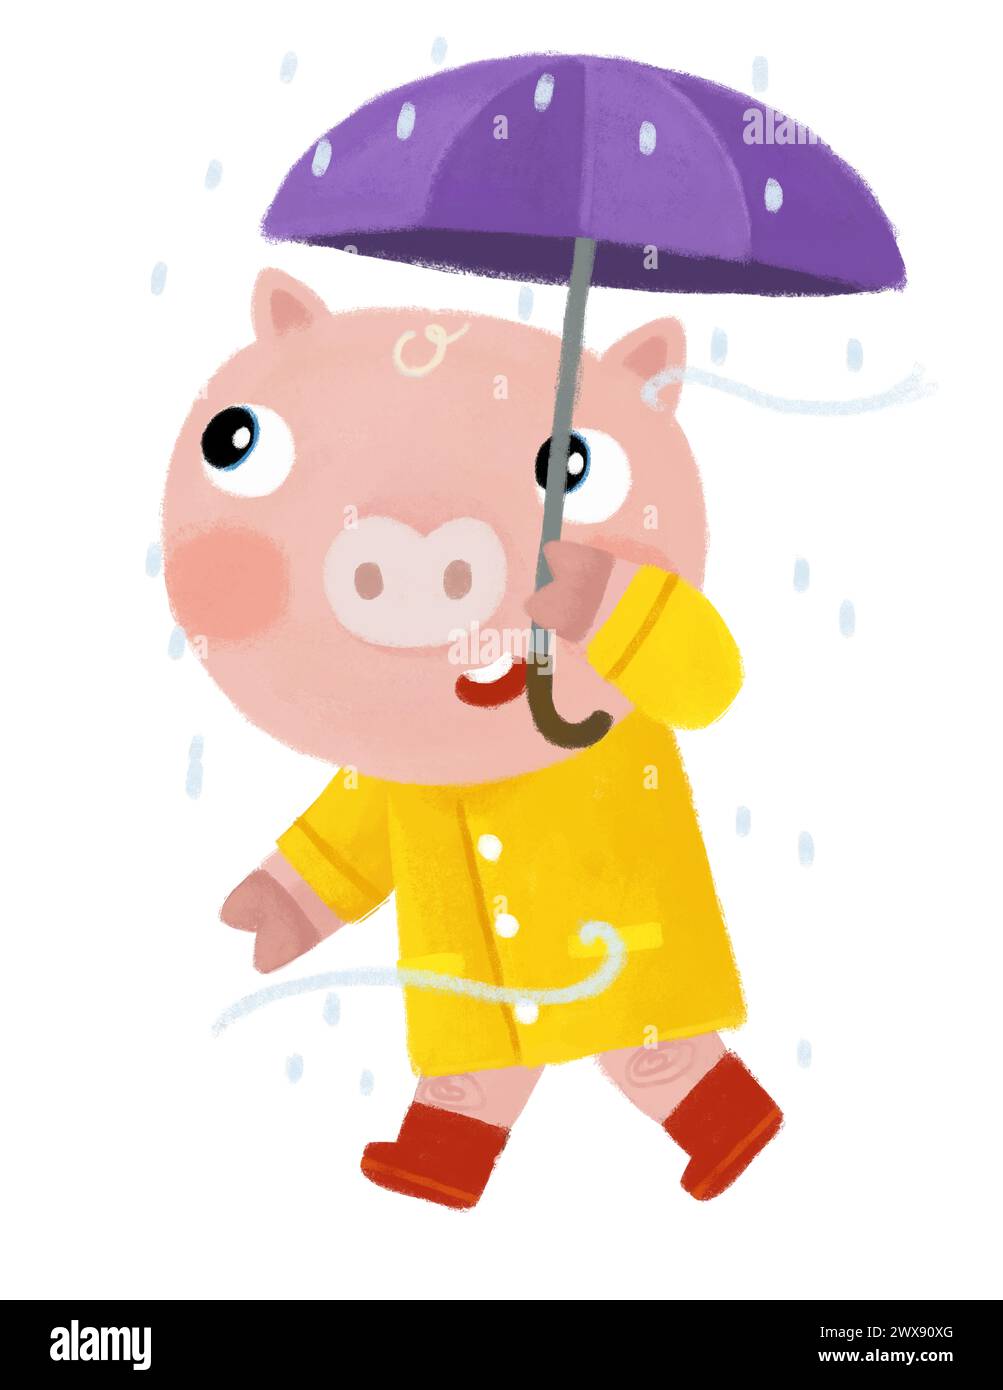 Zeichentrickszene mit glücklichem Bauernschwein-Jungen auf der Reise mit Regenschirm im Regen glücklich, Spaß in gelber Regenmantel Illustration für Kinder zu haben Stockfoto